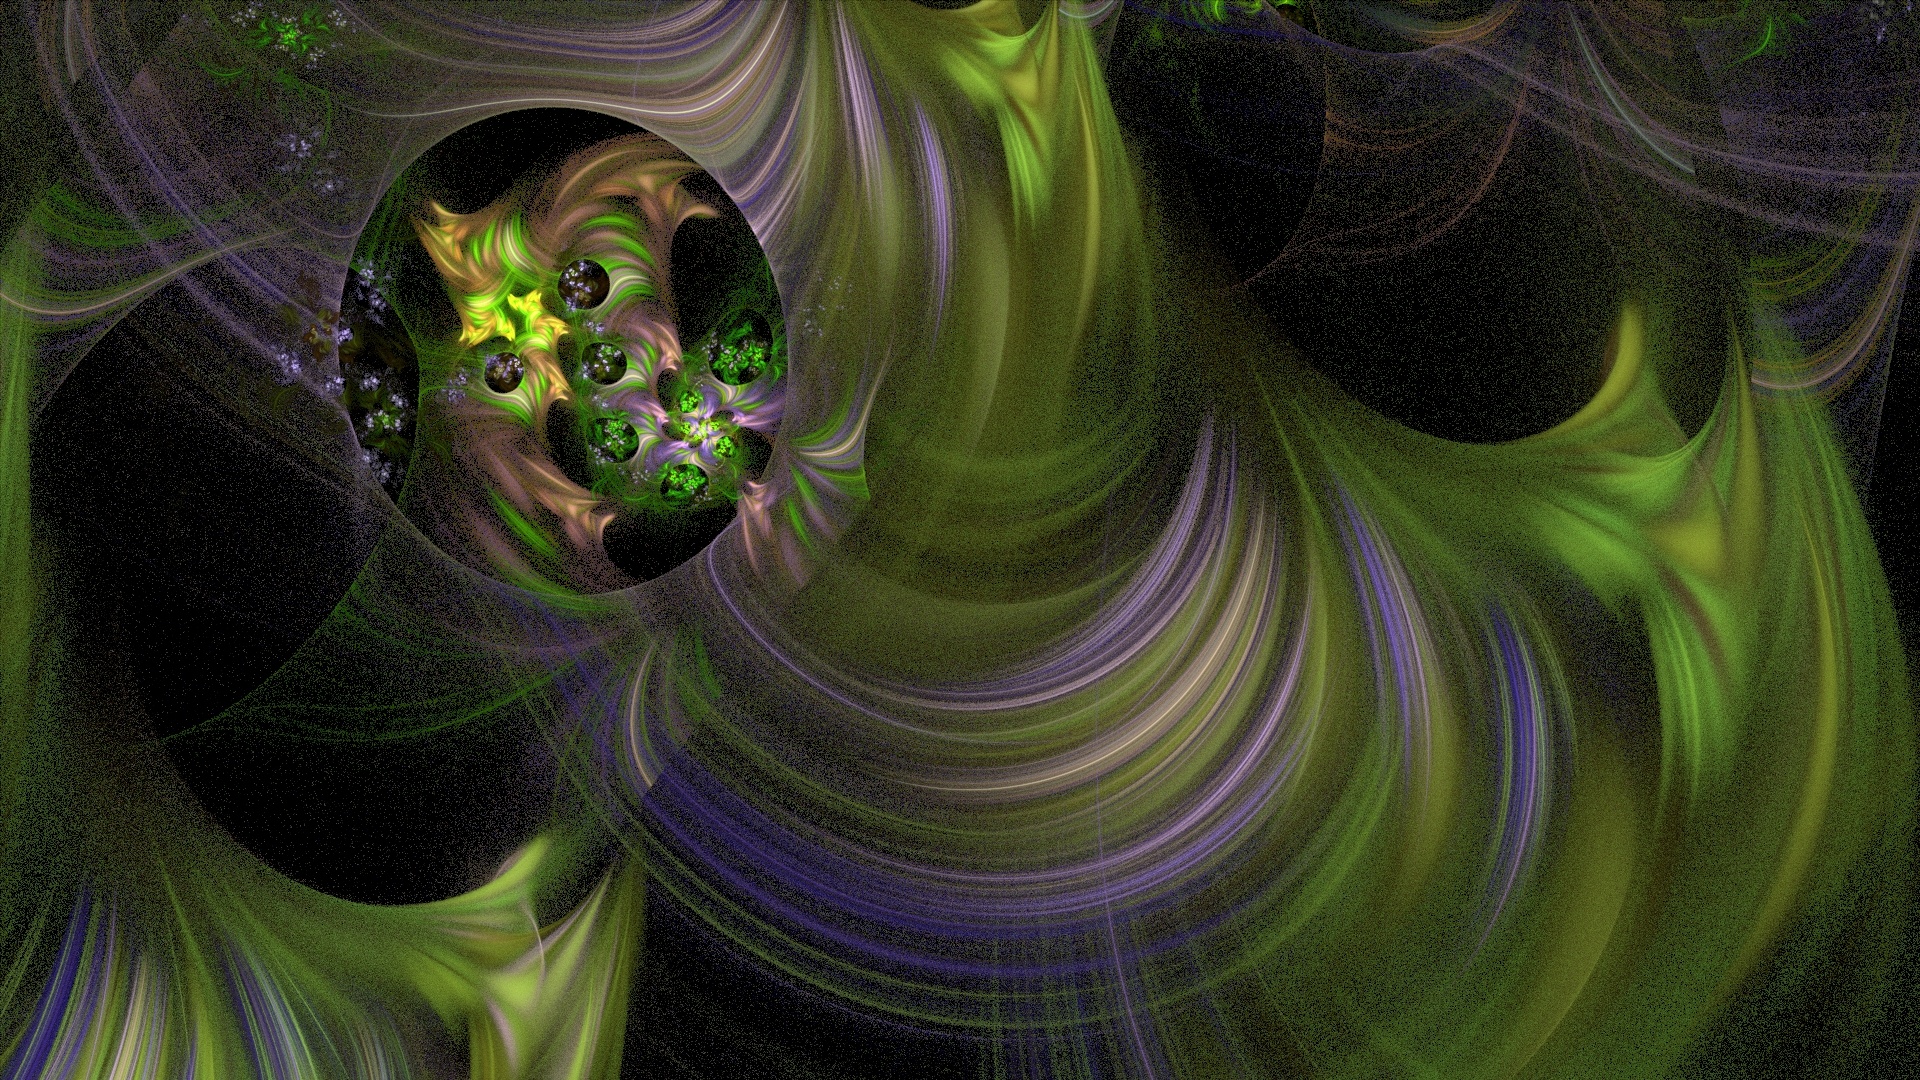 xenomorph fractal wallpaper free photo